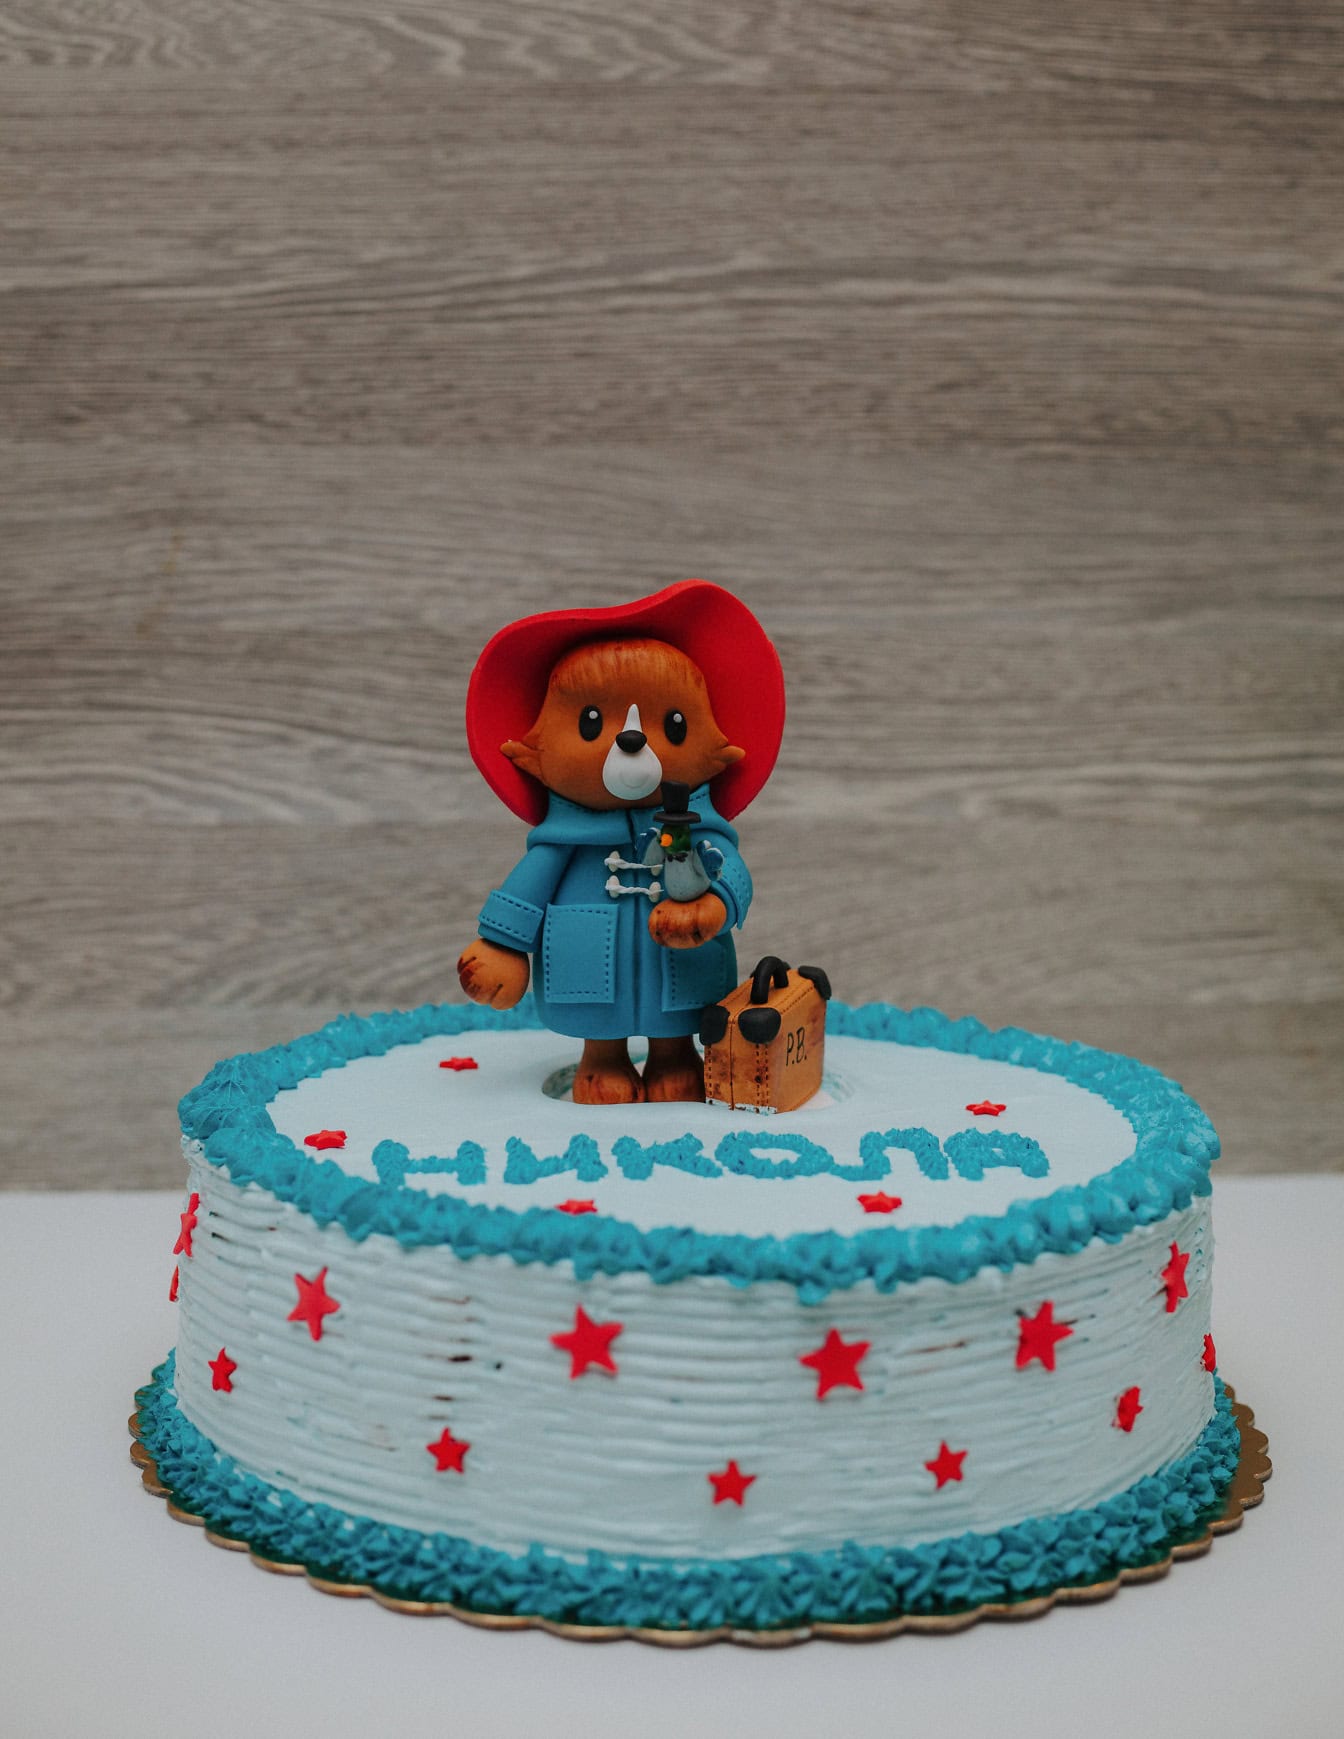 Праздничный торт с украшением в виде плюшевого мишки Паддингтона сверху